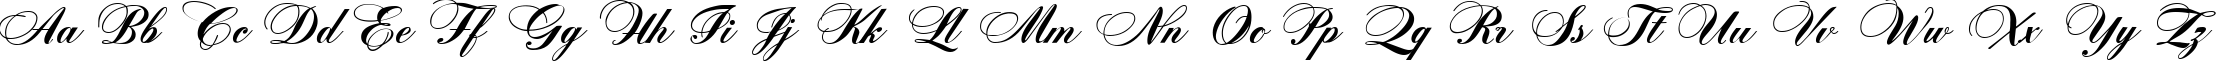 Пример написания английского алфавита шрифтом Zither Script